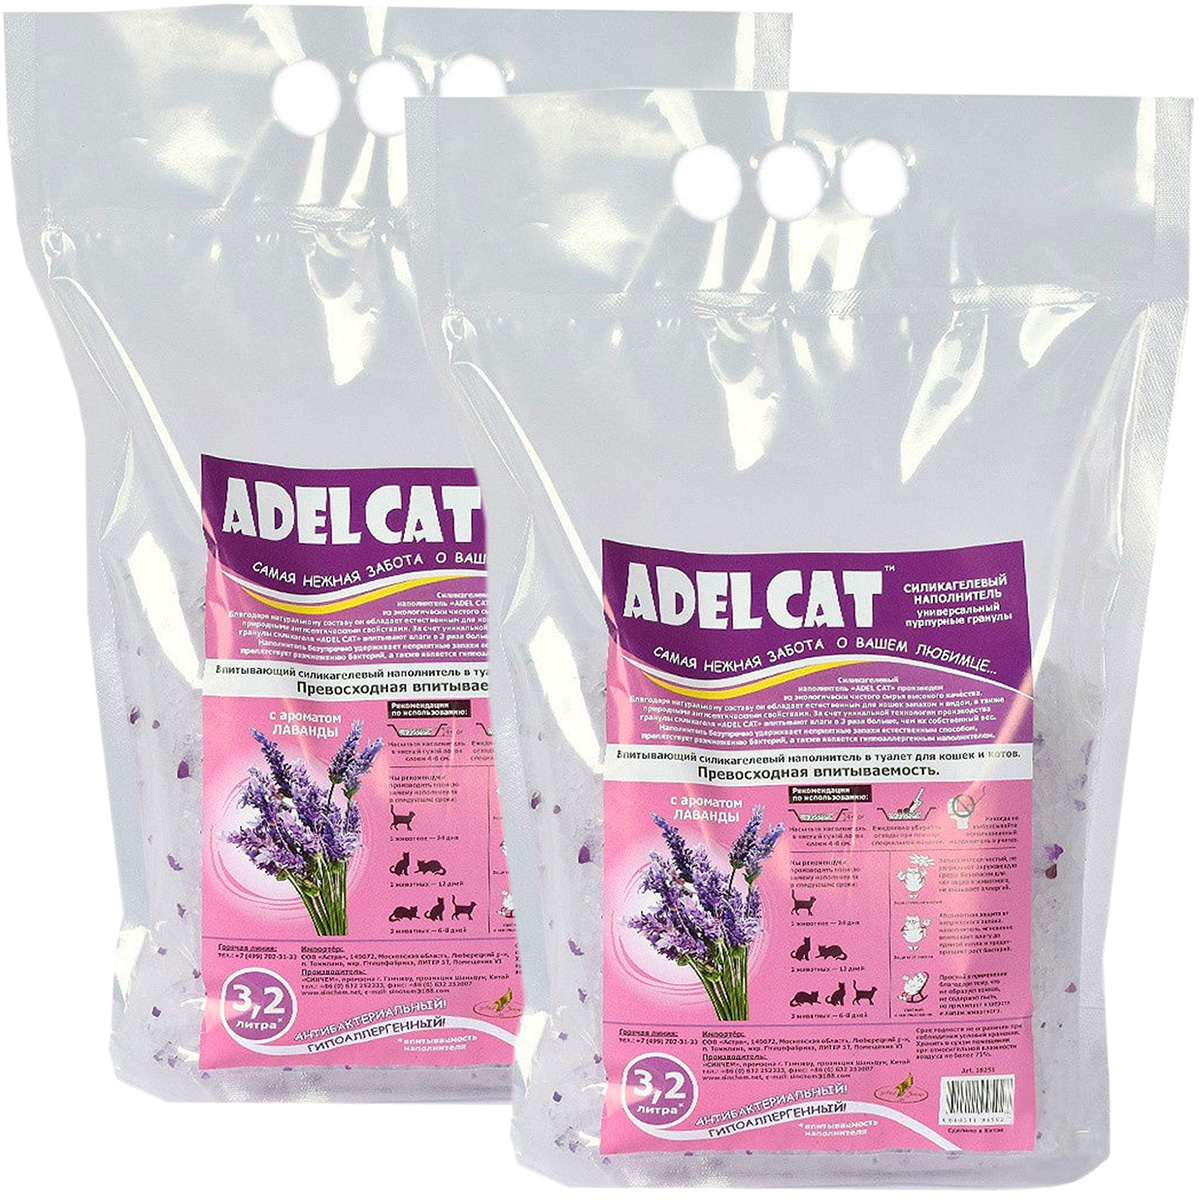 Наполнитель Adel cat силикагелевый пурпурные гранулы, лаванда, 2шт по 3,2 л